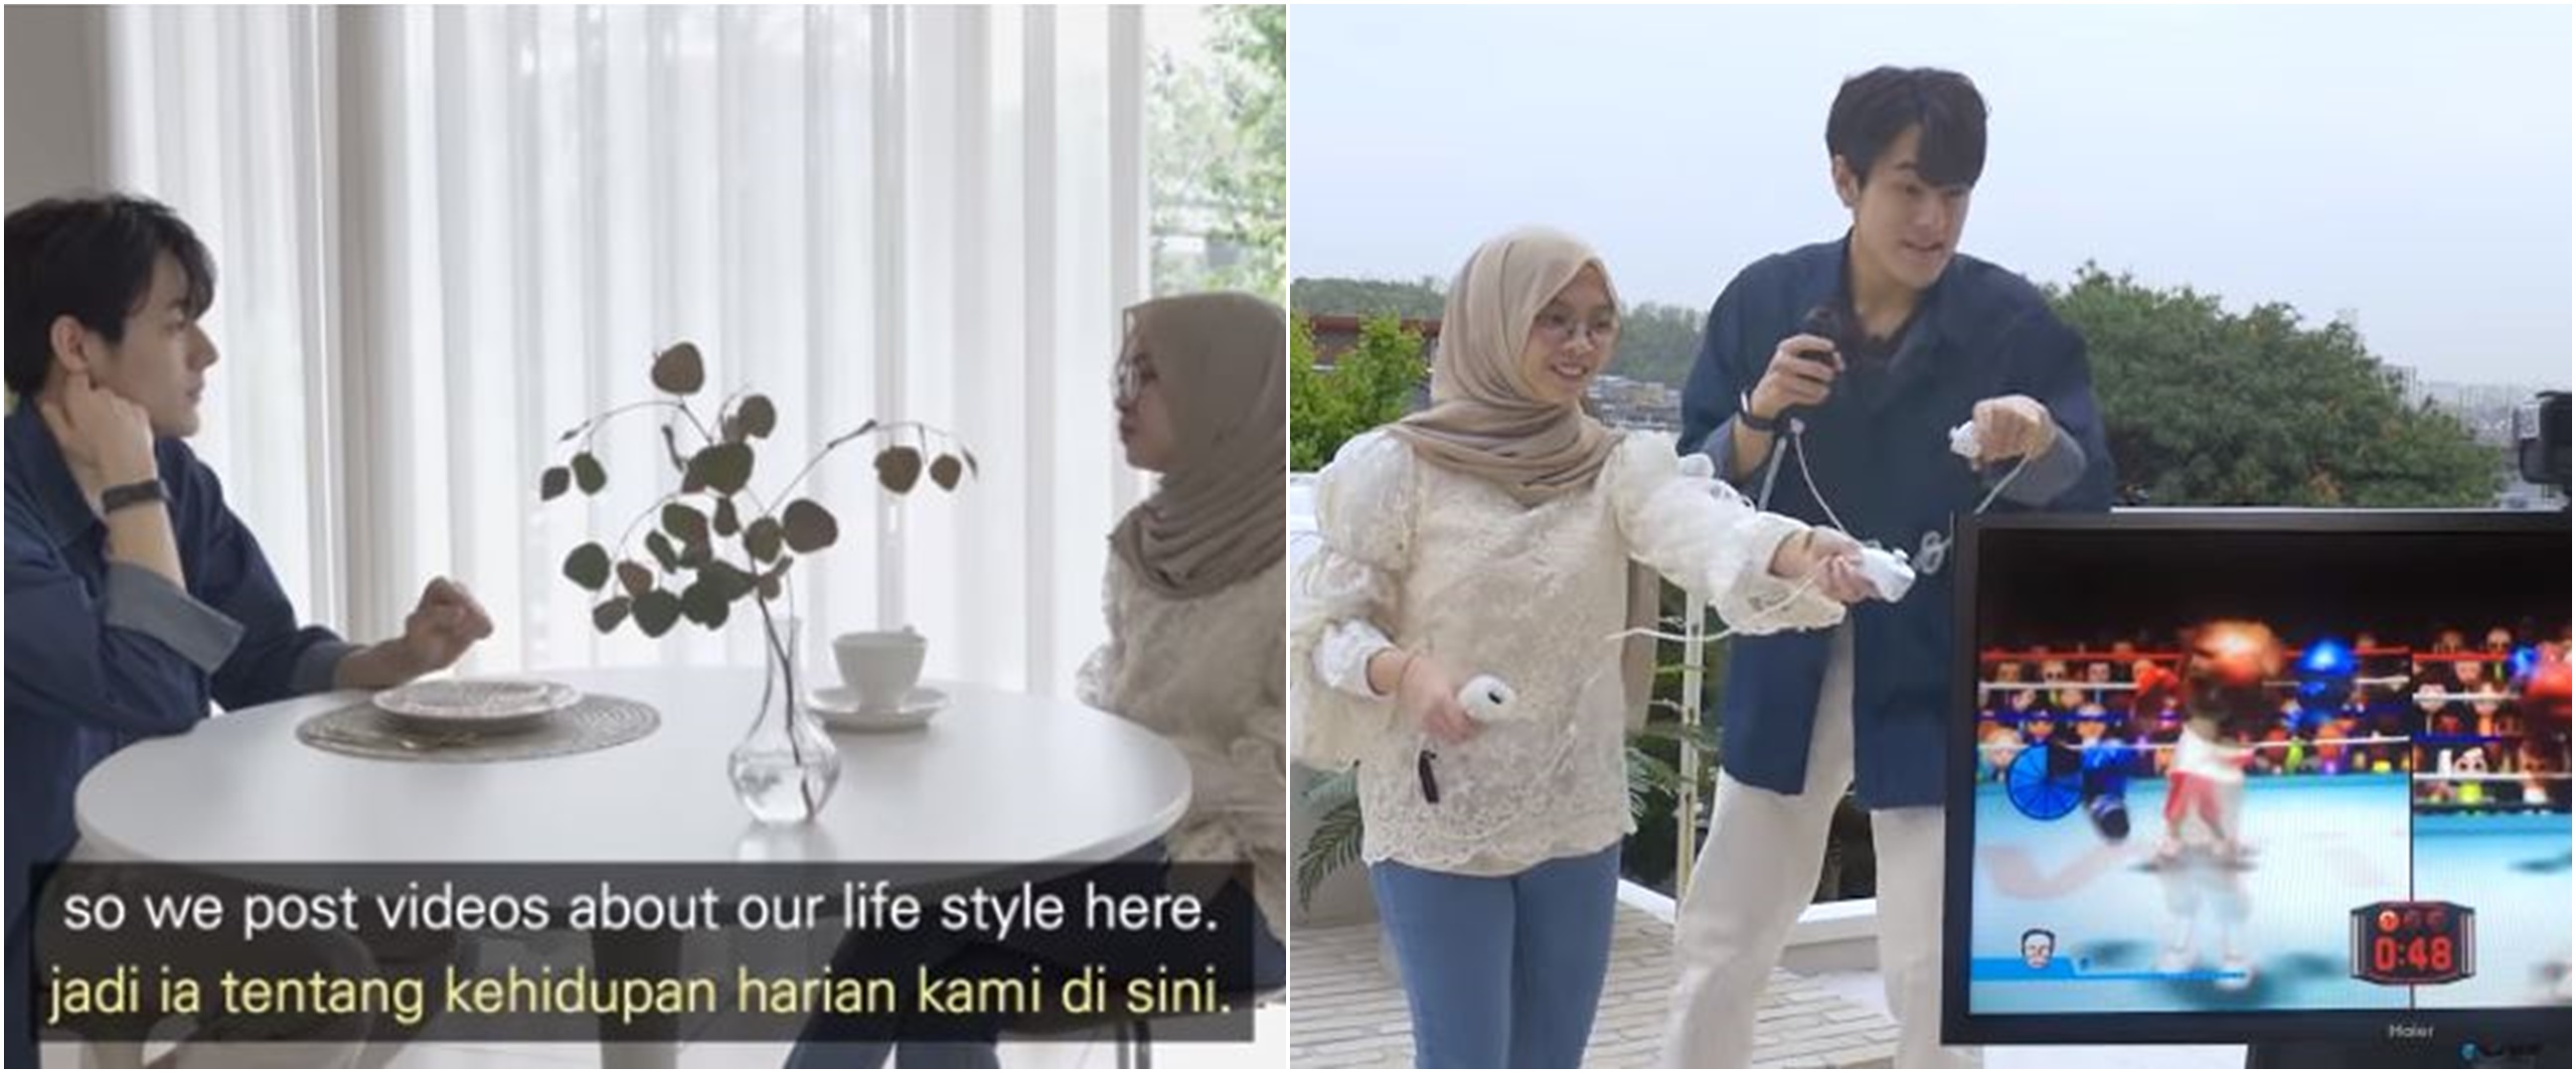 Gadis Muslim blind date dengan oppa Korea, sikap cowok bikin meleleh